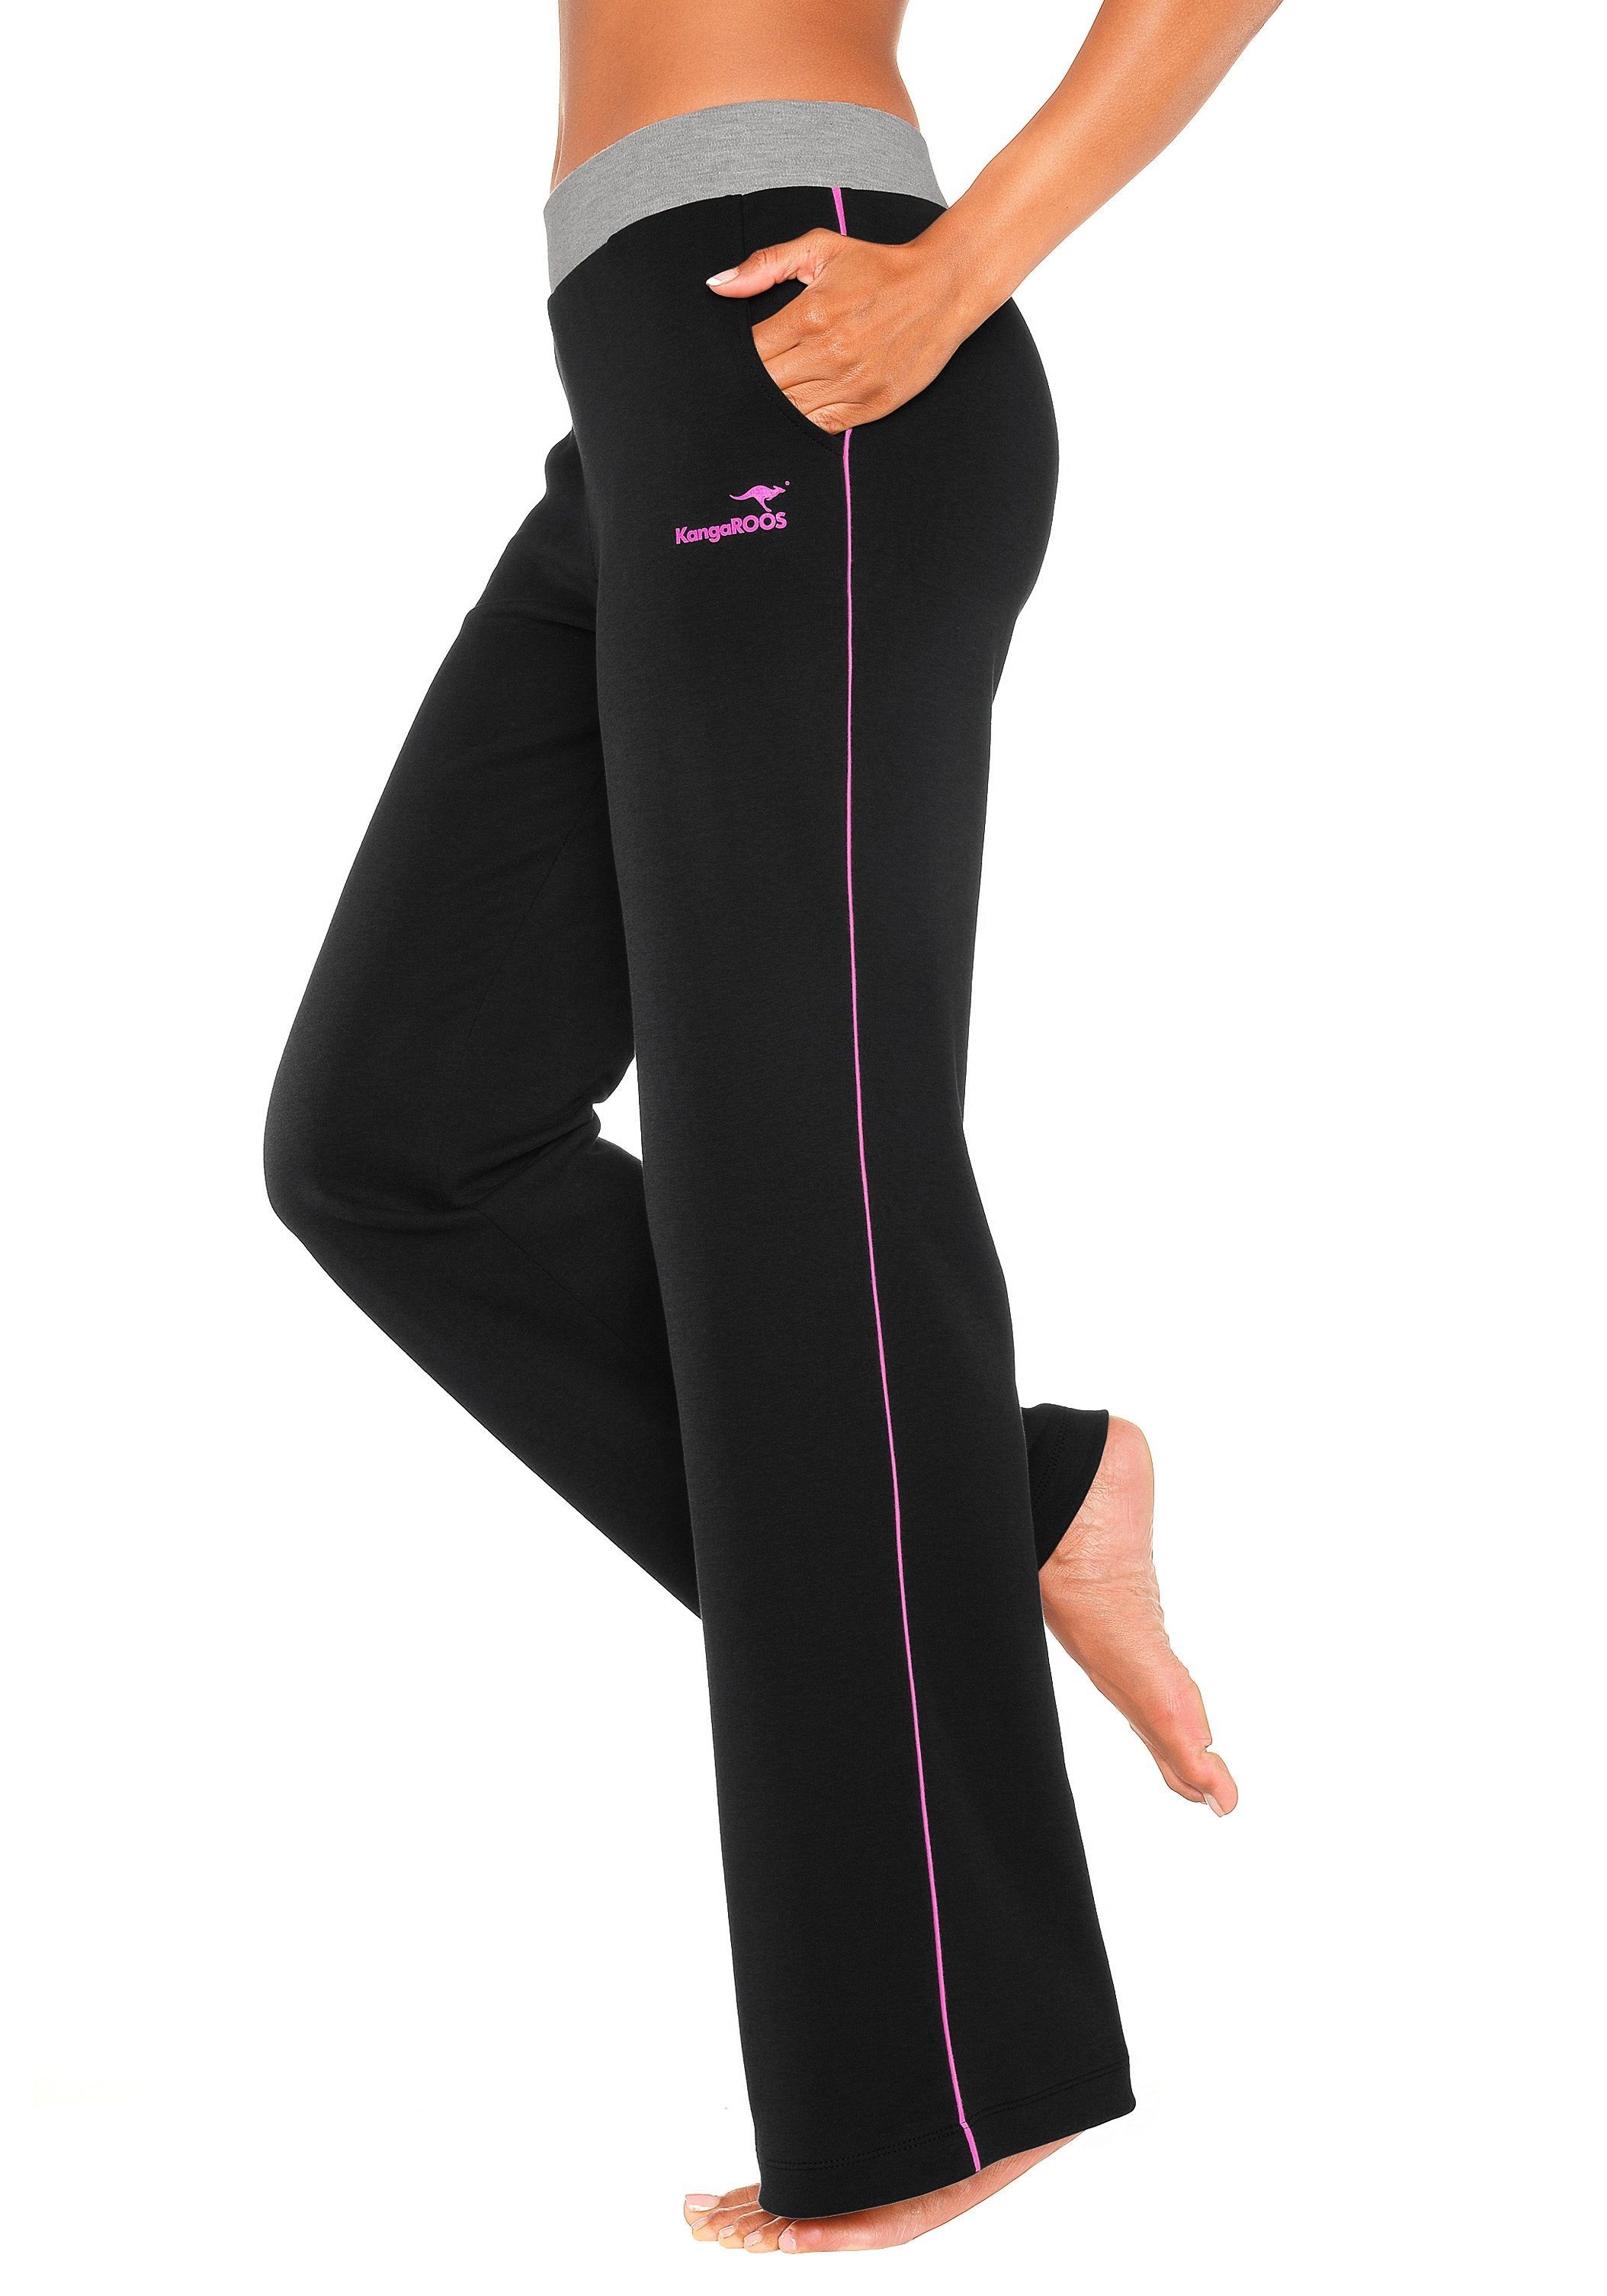 KangaROOS Relaxhose mit schwarz-pink-pink Loungeanzug Loungewear, Bund, breitem